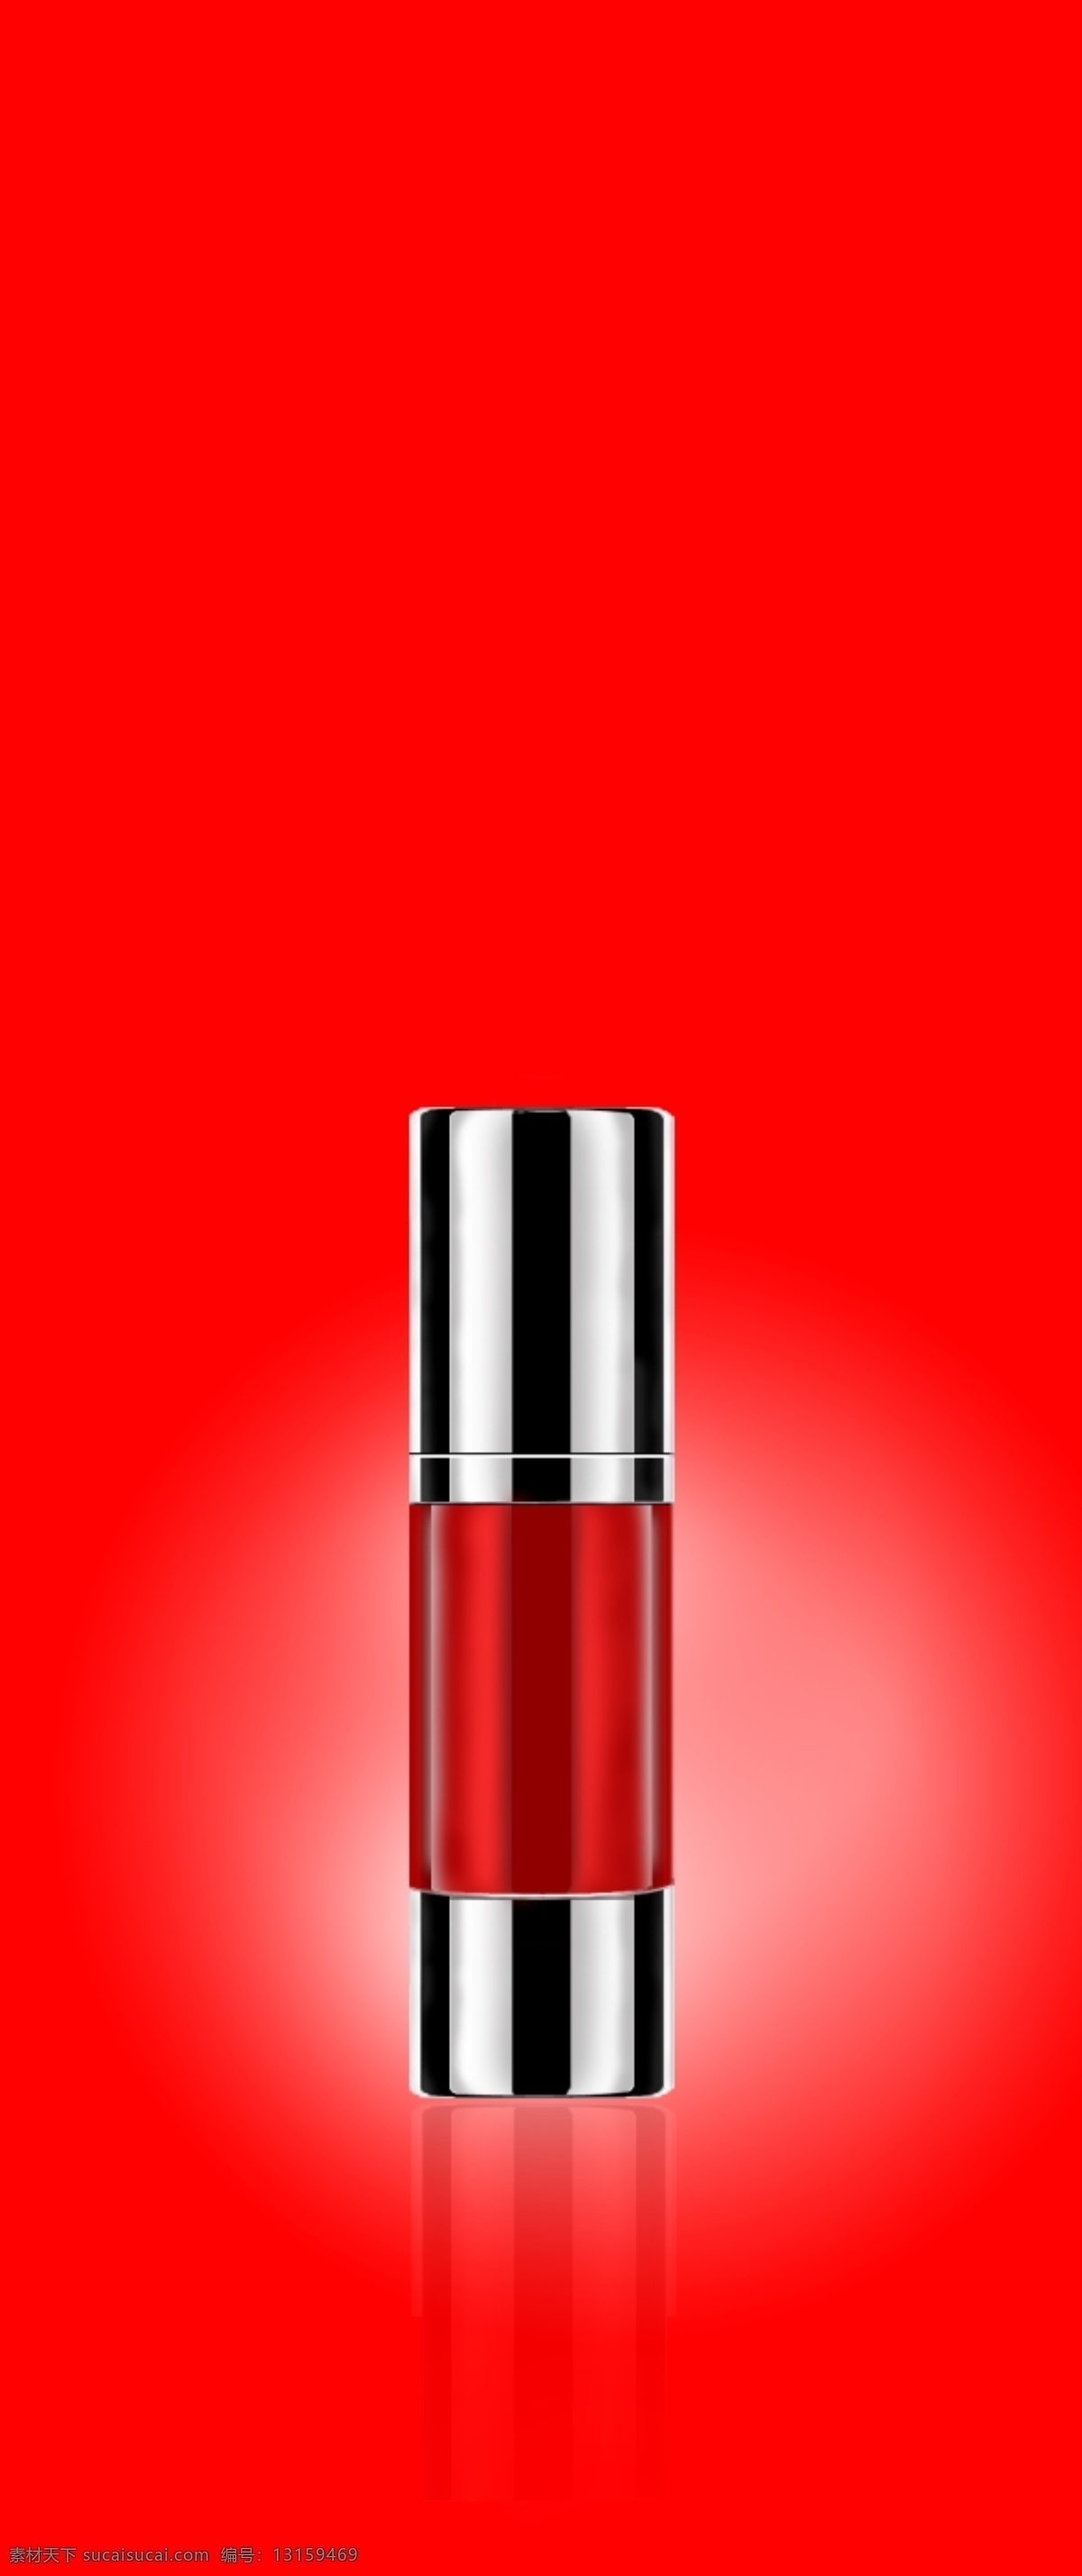 化妆品瓶子 产品精修 护肤品 化妆品 可编辑模板 图层 颜色可修改 ps